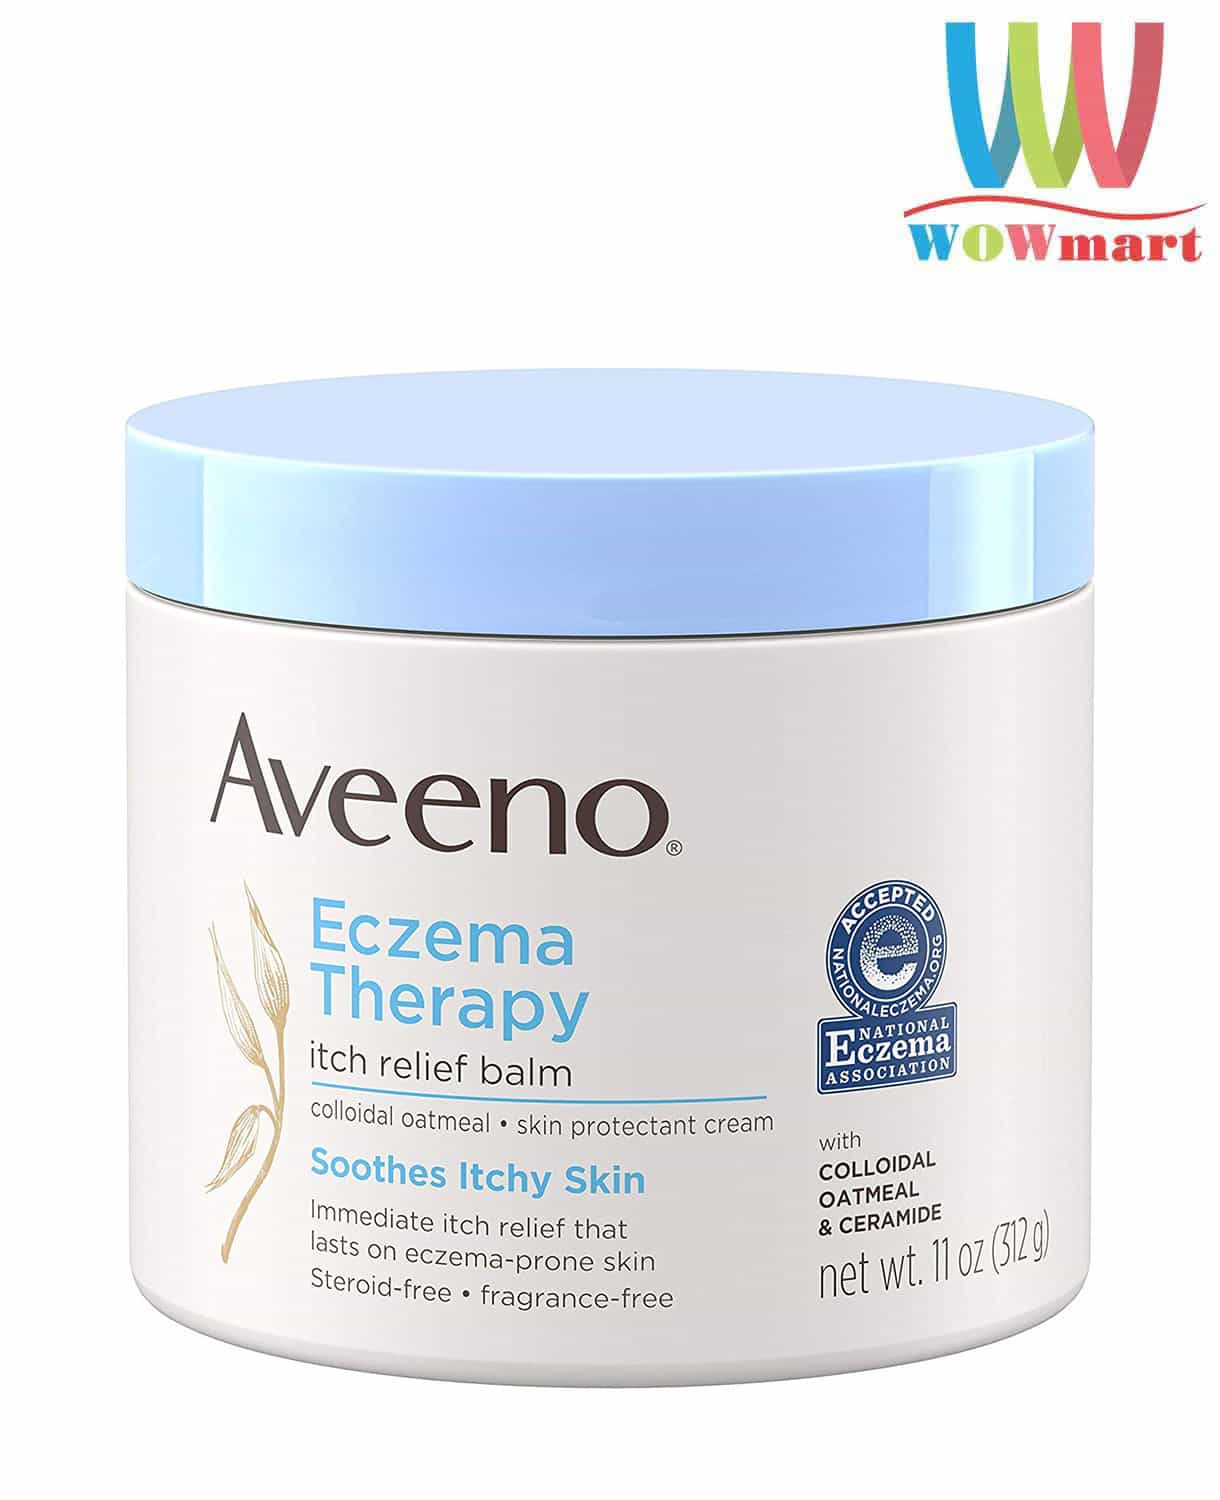 Aveeno Eczema Therapy là gì và nó hoạt động như thế nào để điều trị chàm?
